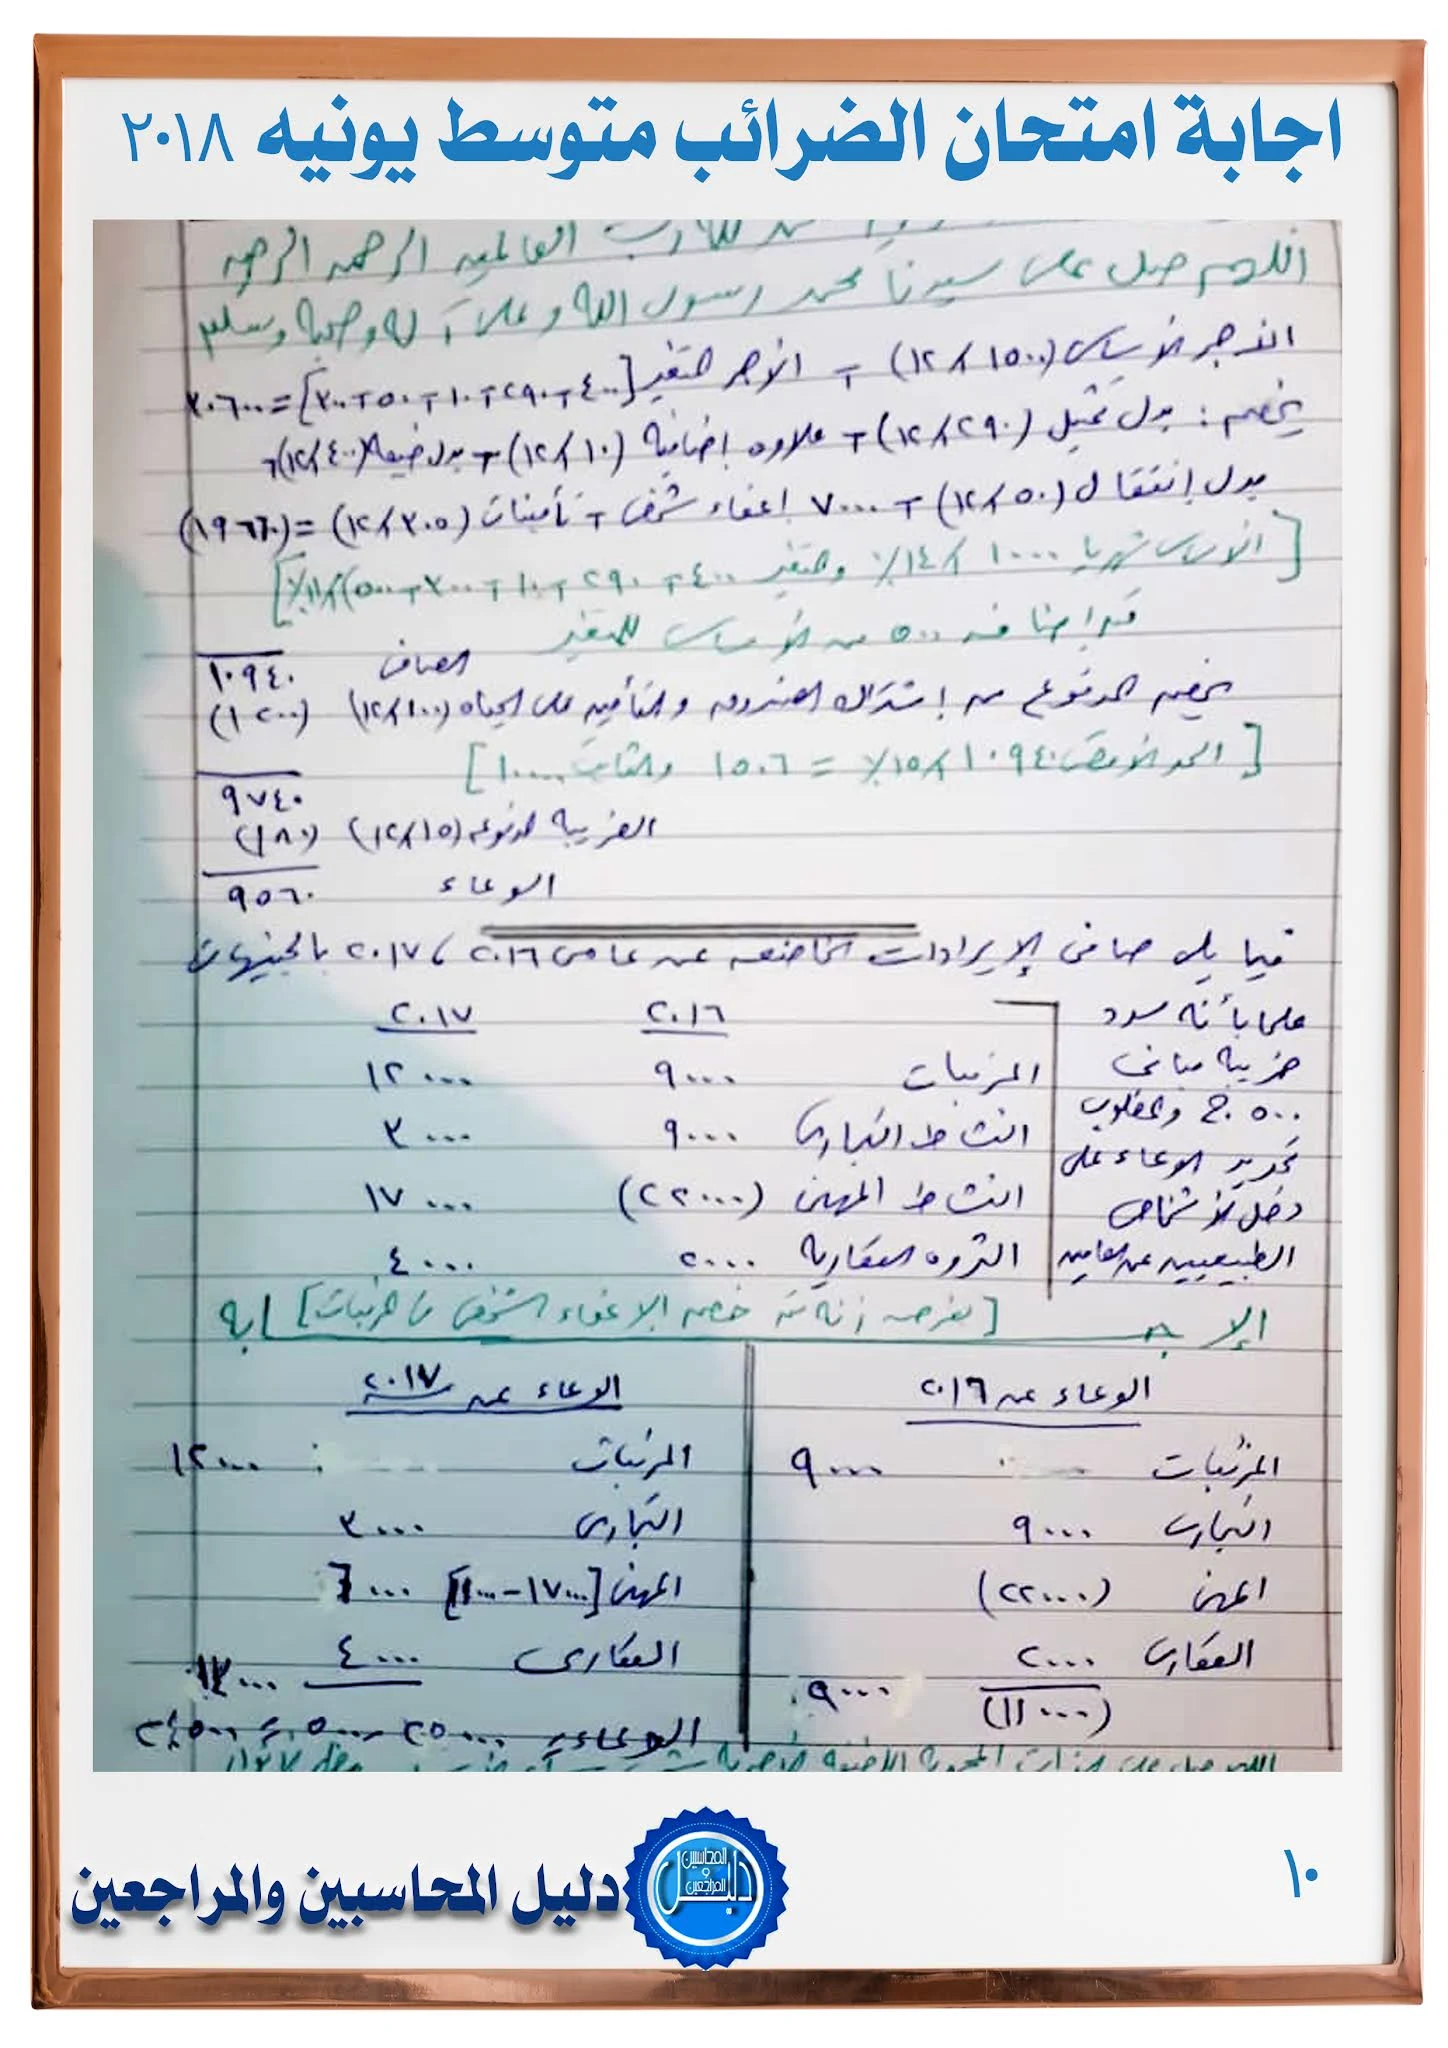 اجابة امتحان الضرائب للمستوي المتوسط  يونيو 2018 جمعية المحاسبين والمراجعين المصرية